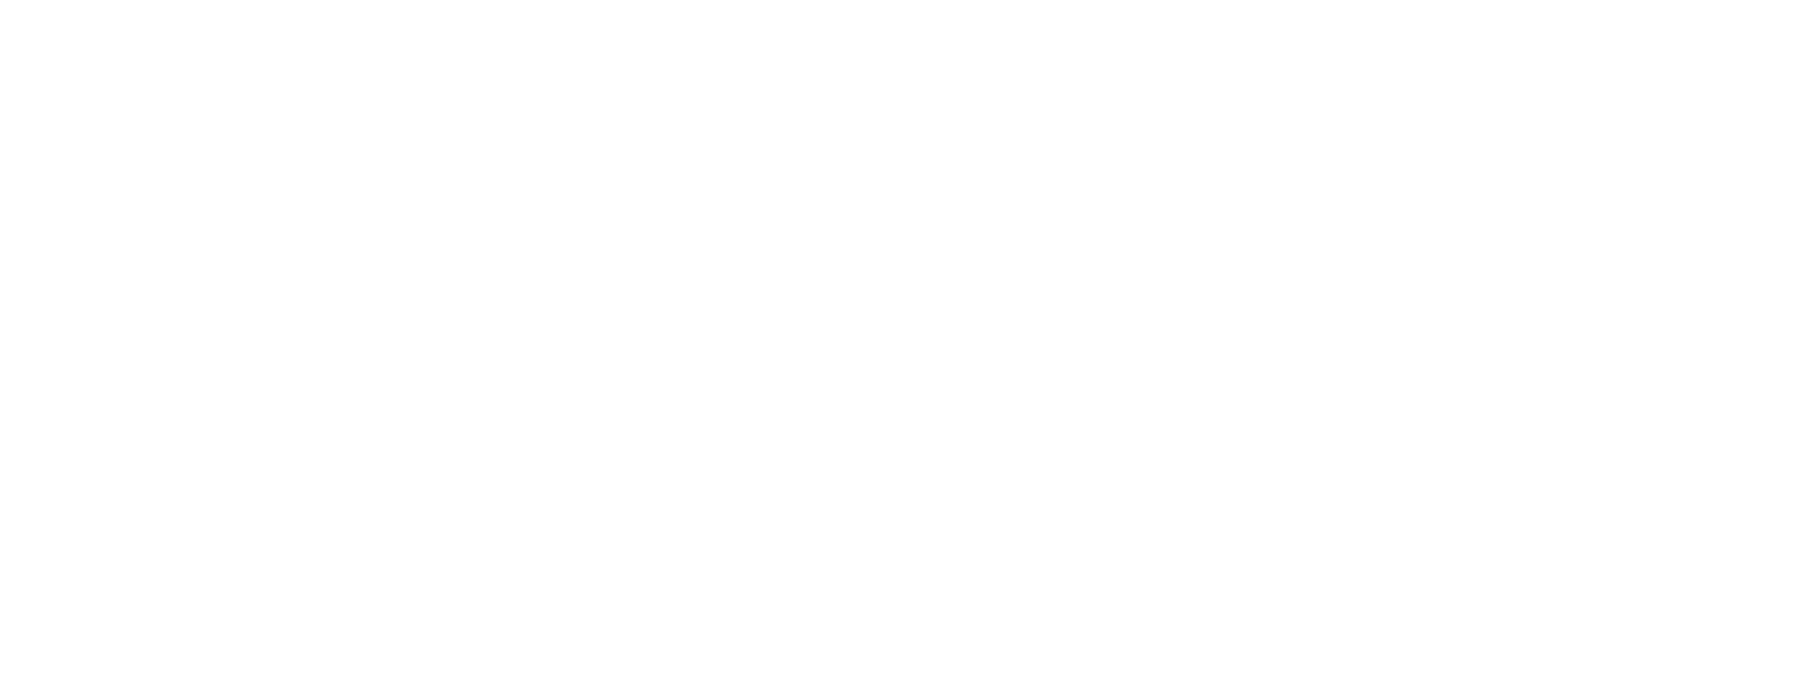 Aspiring Women Entrepreneurs Logo